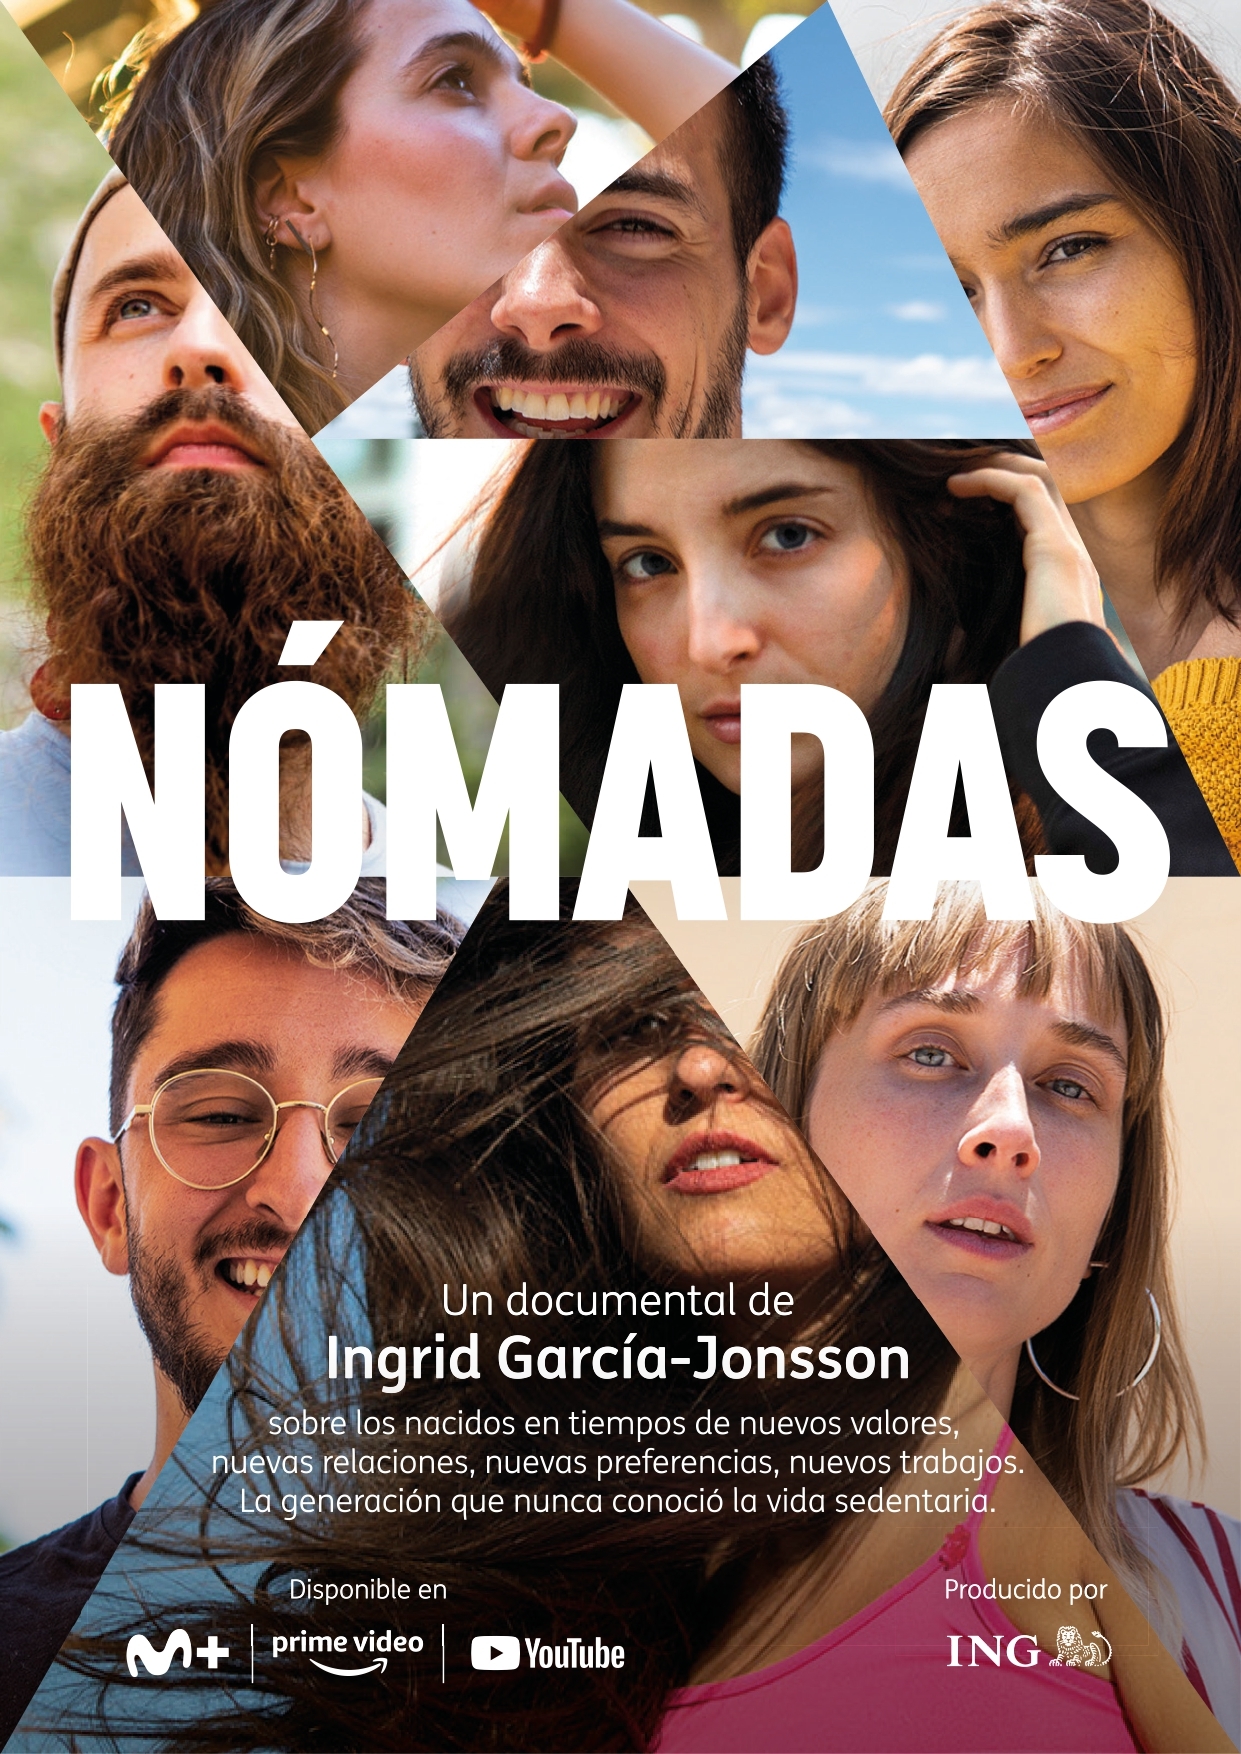 Cartel promocional del documental que se estrena hoy en Movistar +, Prime Video y YouTube.